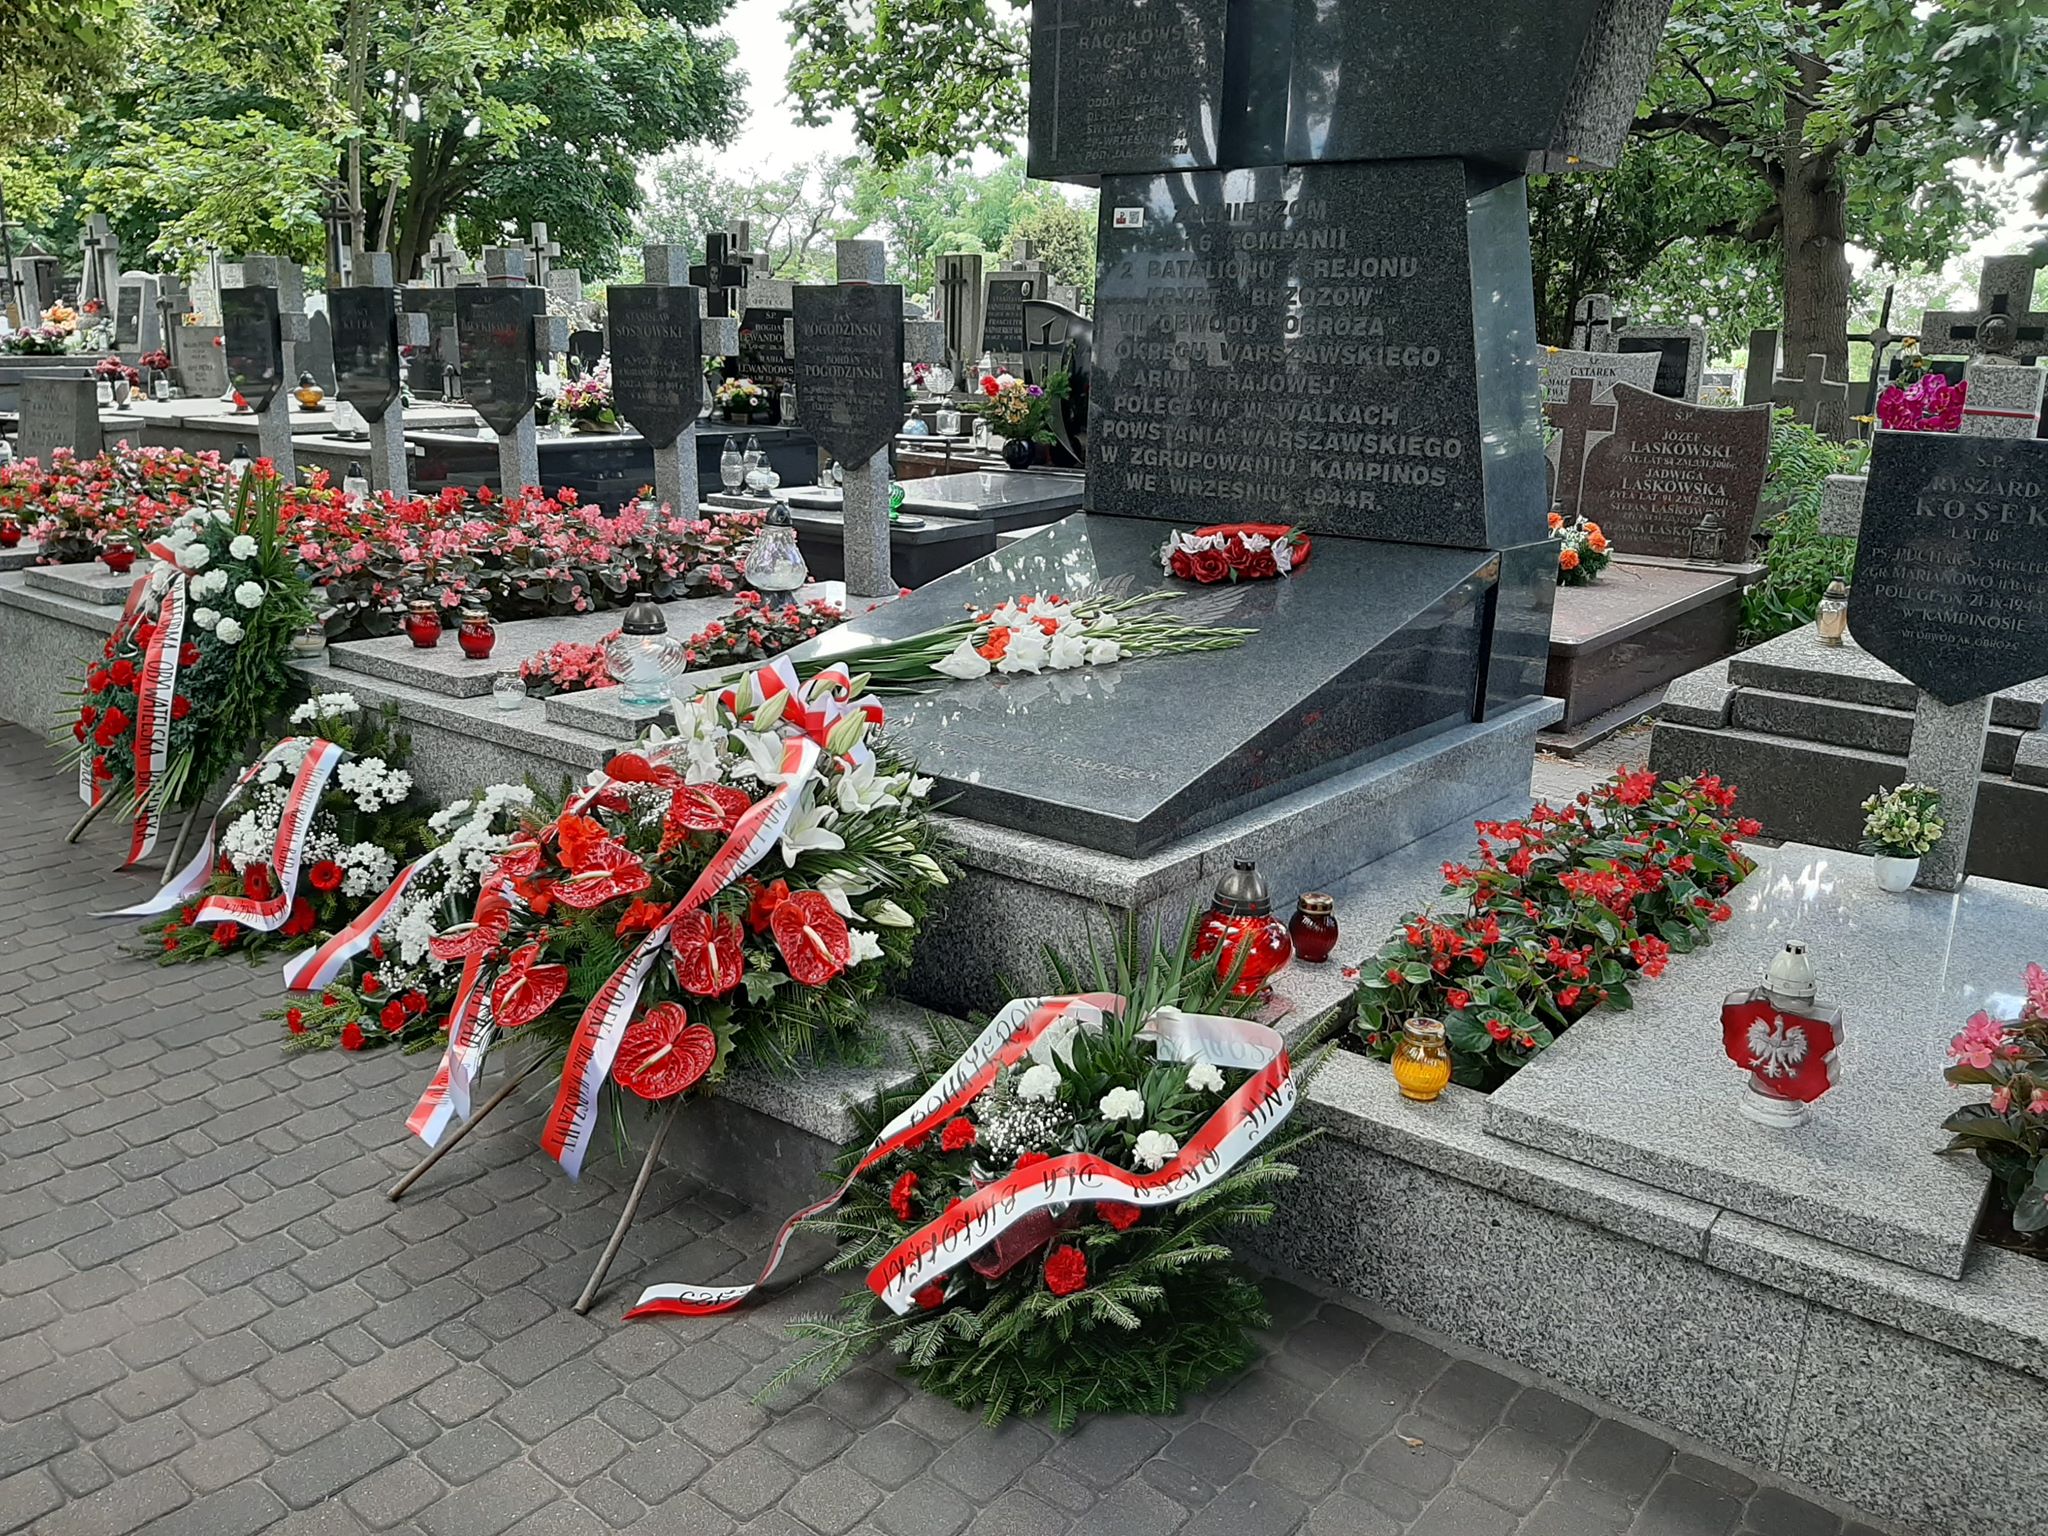 Godzina W – 76. rocznica Powstania Warszawskiego